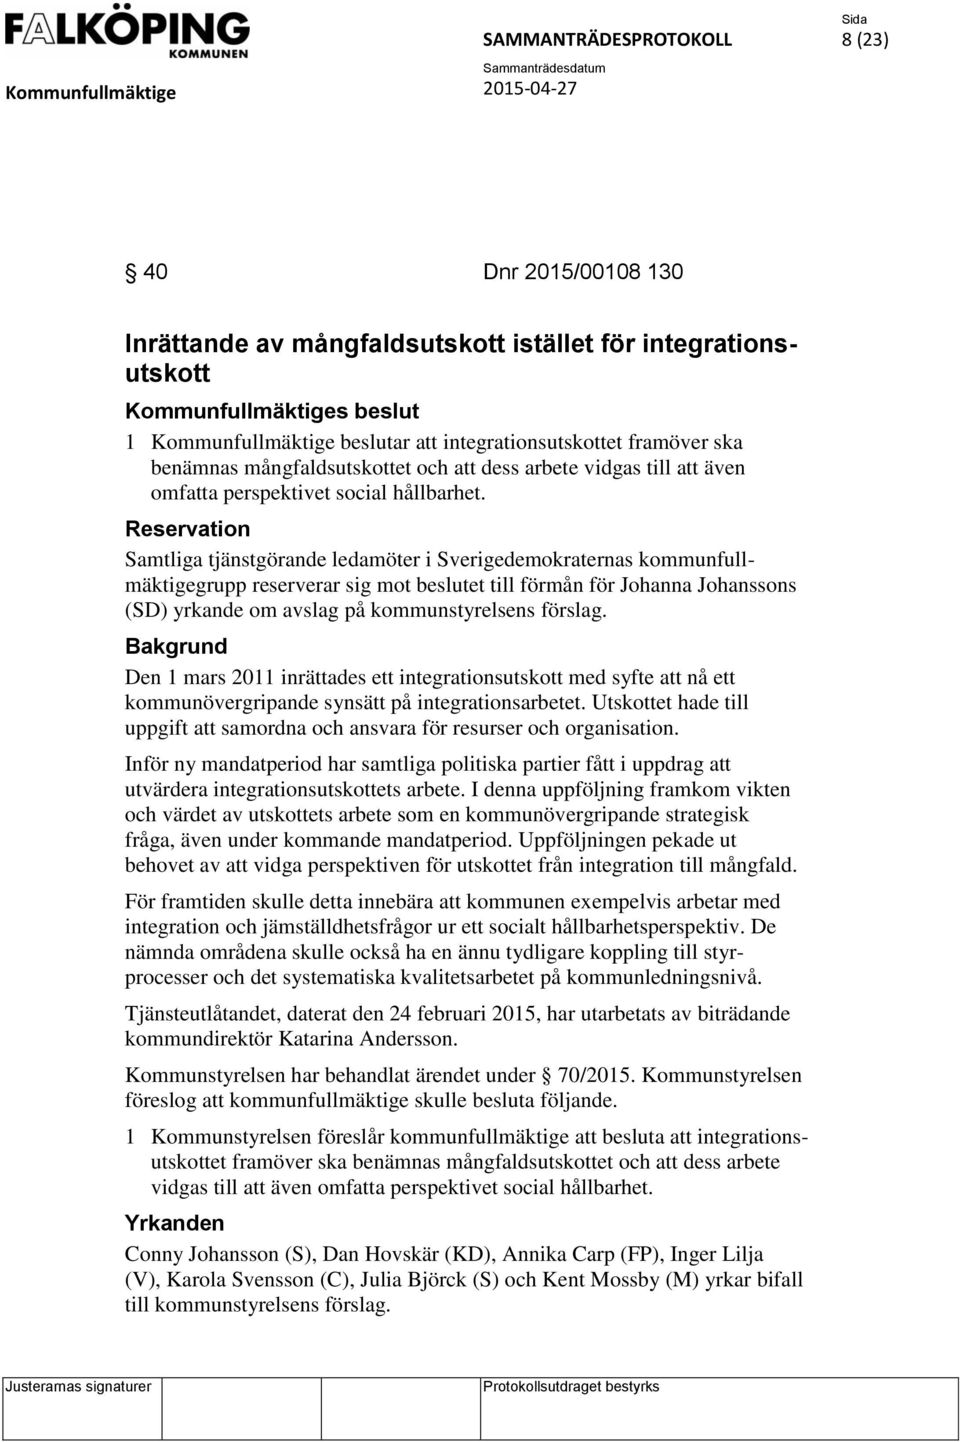 Reservation Samtliga tjänstgörande ledamöter i Sverigedemokraternas kommunfullmäktigegrupp reserverar sig mot beslutet till förmån för Johanna Johanssons (SD) yrkande om avslag på kommunstyrelsens